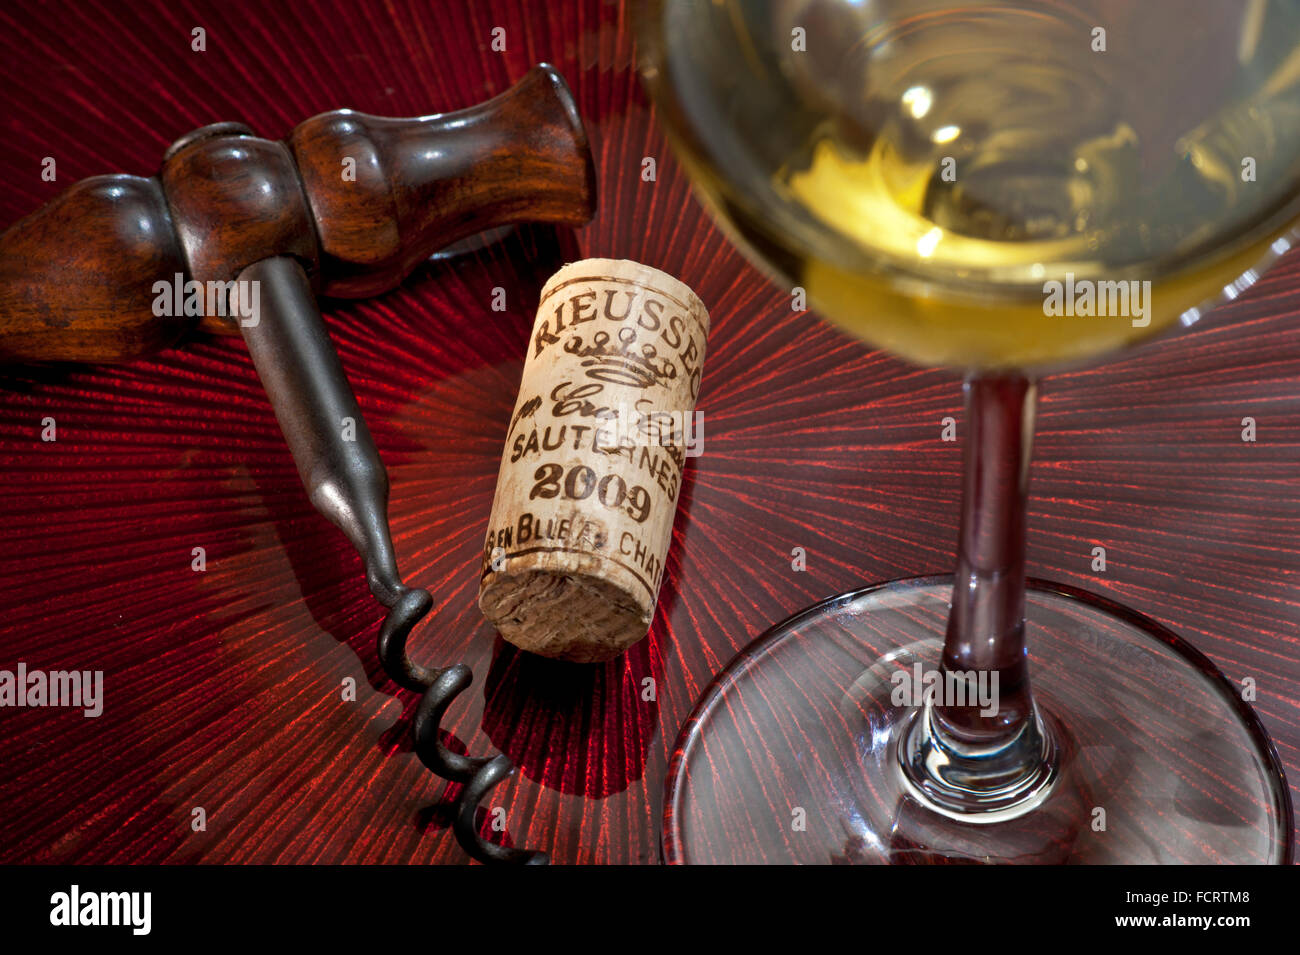 Château Rieussec Sauternes 2009 vin blanc, liège et tire-bouchon antique dans une situation de luxe de dégustation de vins fins Semillon Banque D'Images